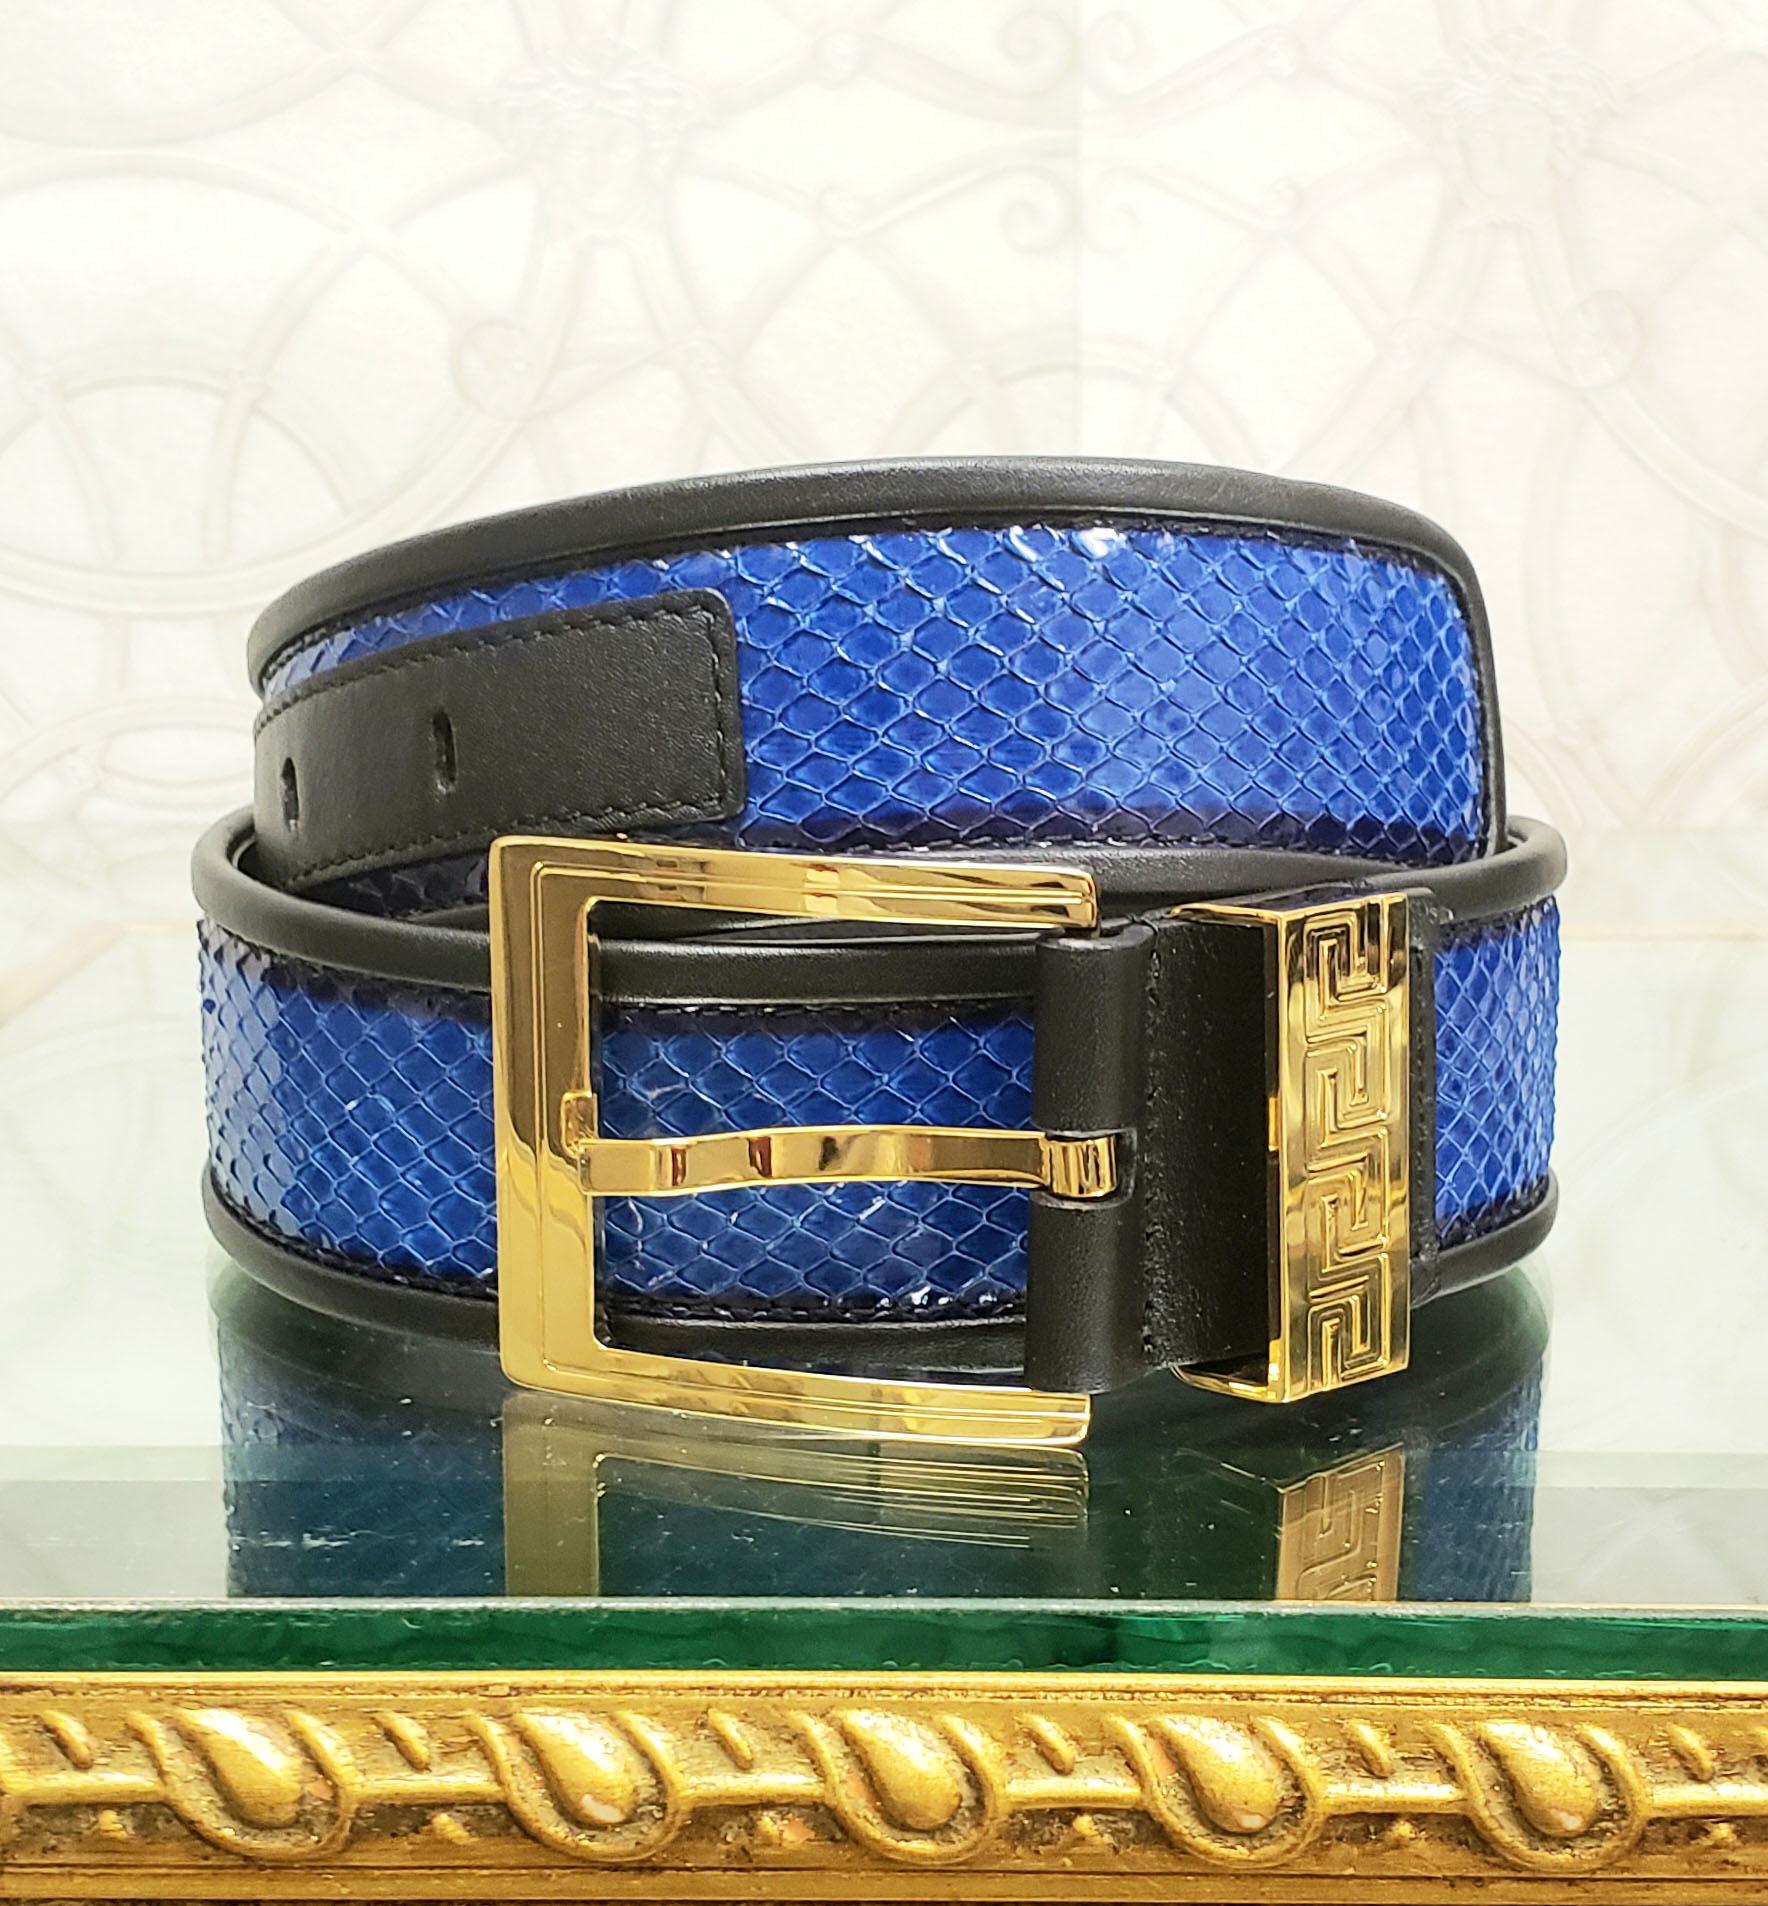 Noir Chaussures de sport Versace en peau de serpent bleue avec bride à clé grenouille dorée 75/30, pré/automne 2012 L n° 5 en vente